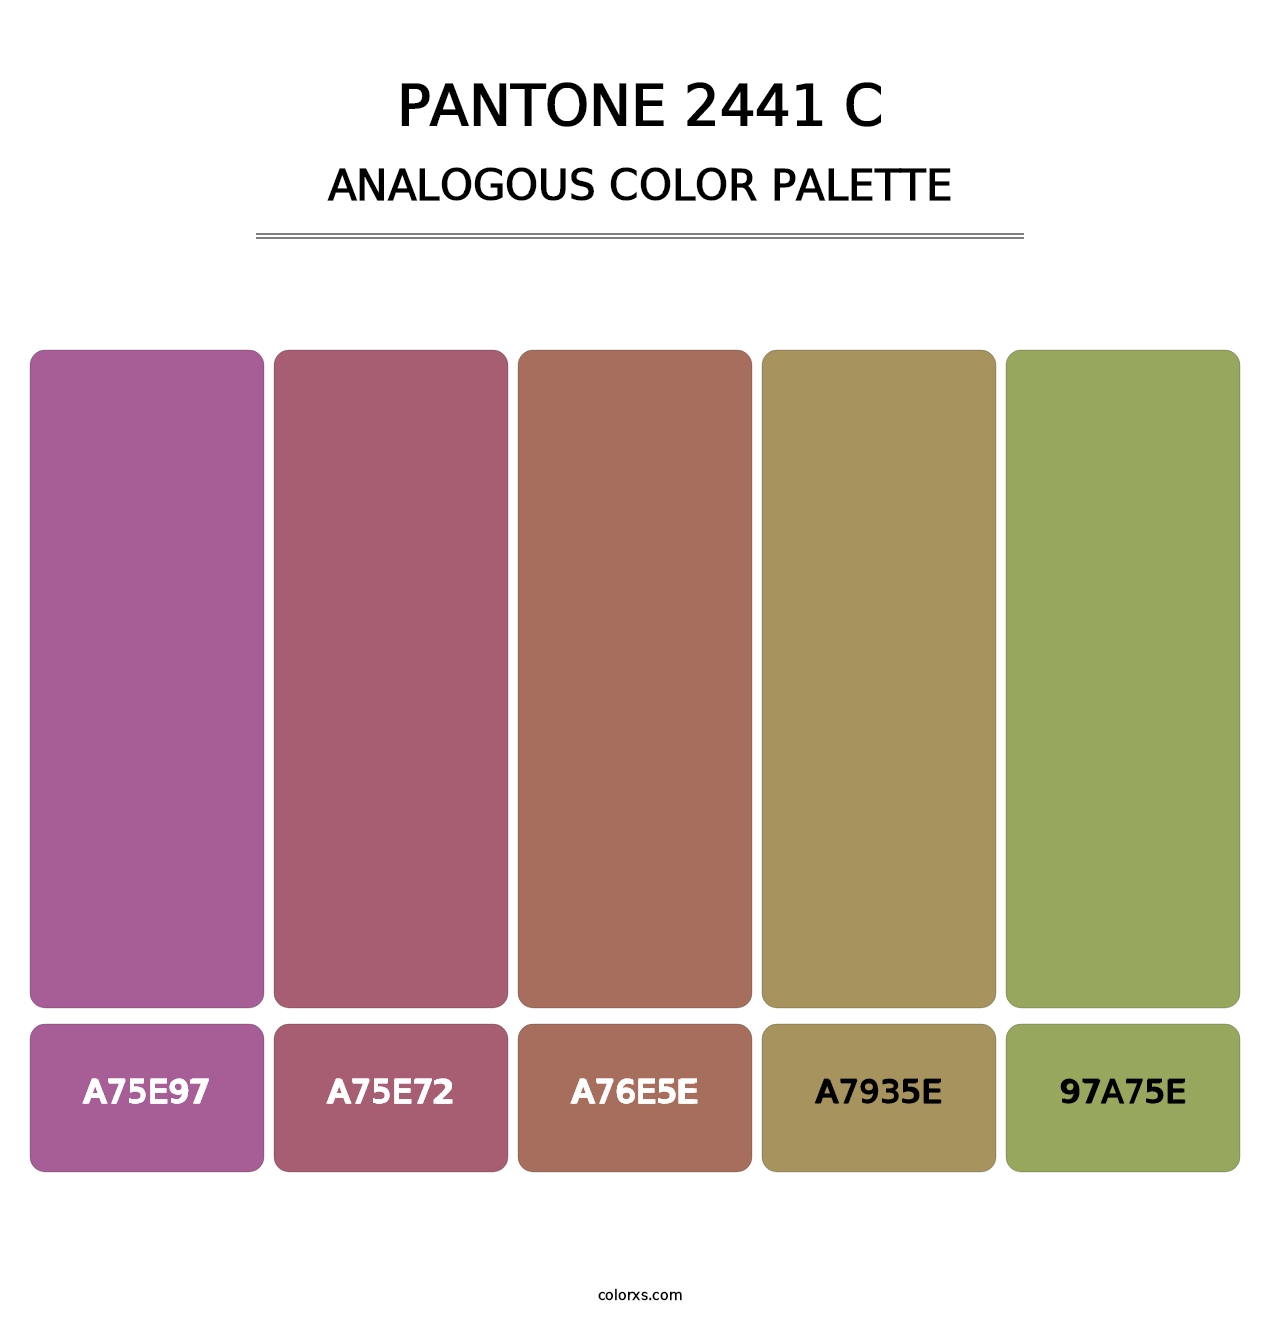 PANTONE 2441 C - Analogous Color Palette